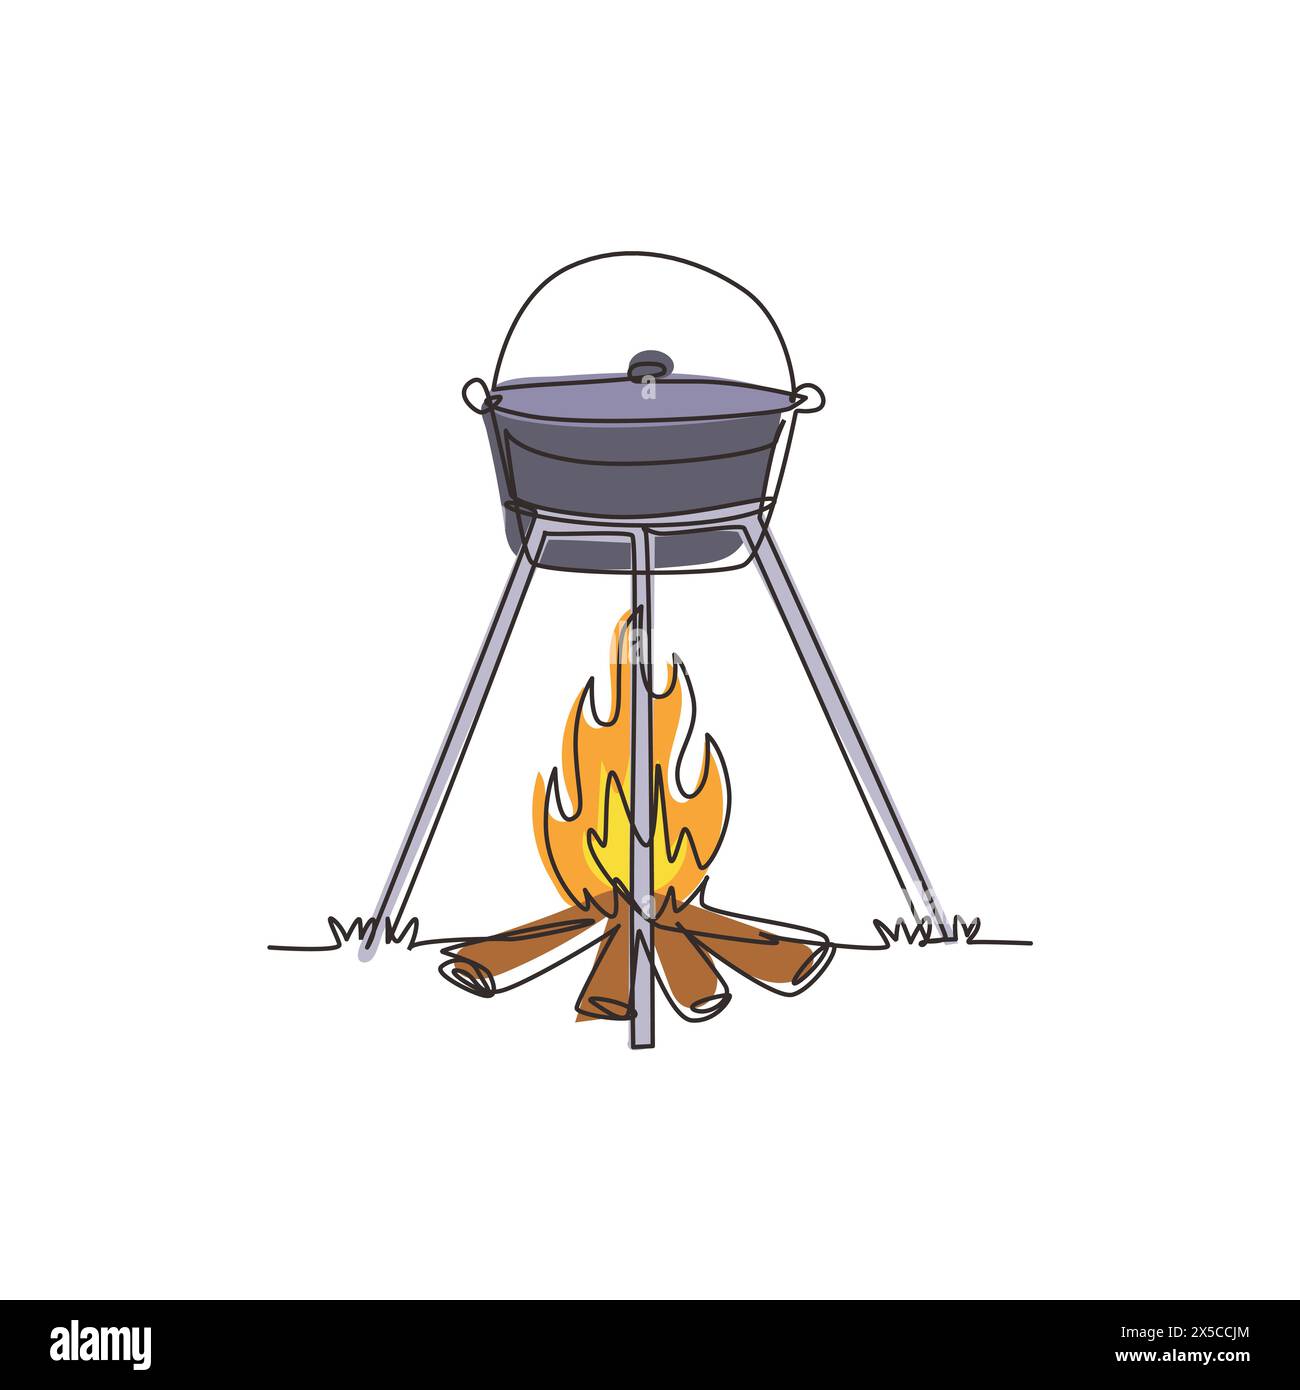 Une seule ligne dessinant le dîner de cuisine dans un pot de camping sur un feu de joie. Chaudron et feu de camp. Herbe extérieure, branche, pierres. pique-nique nature en plein air. Conti Illustration de Vecteur